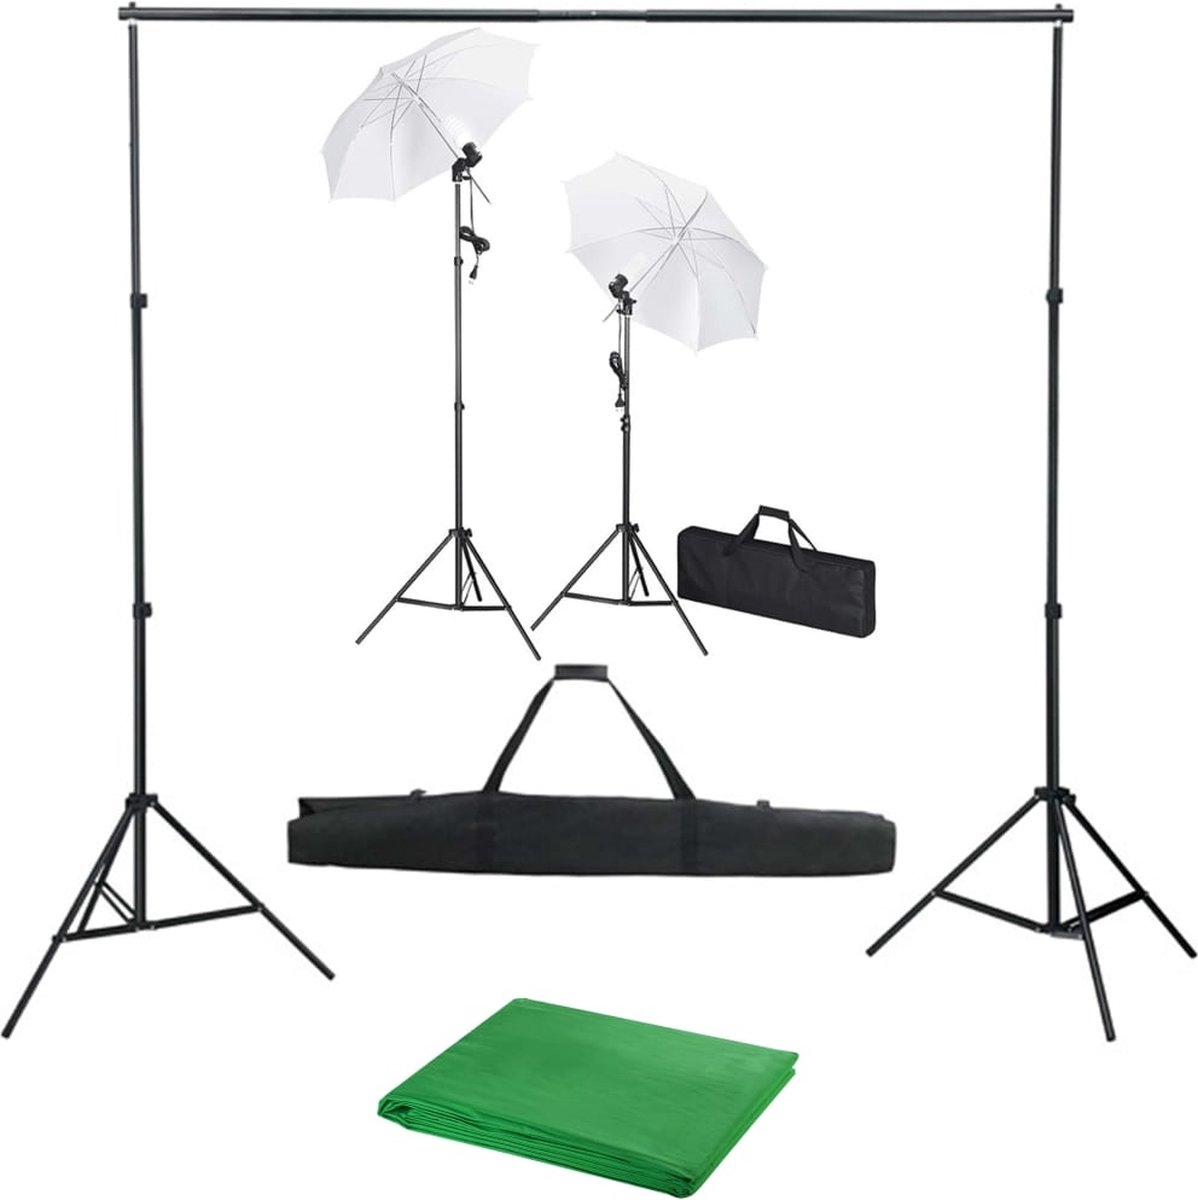 Prolenta premium Fotostudioset met achtergrond, lampen en paraplu's